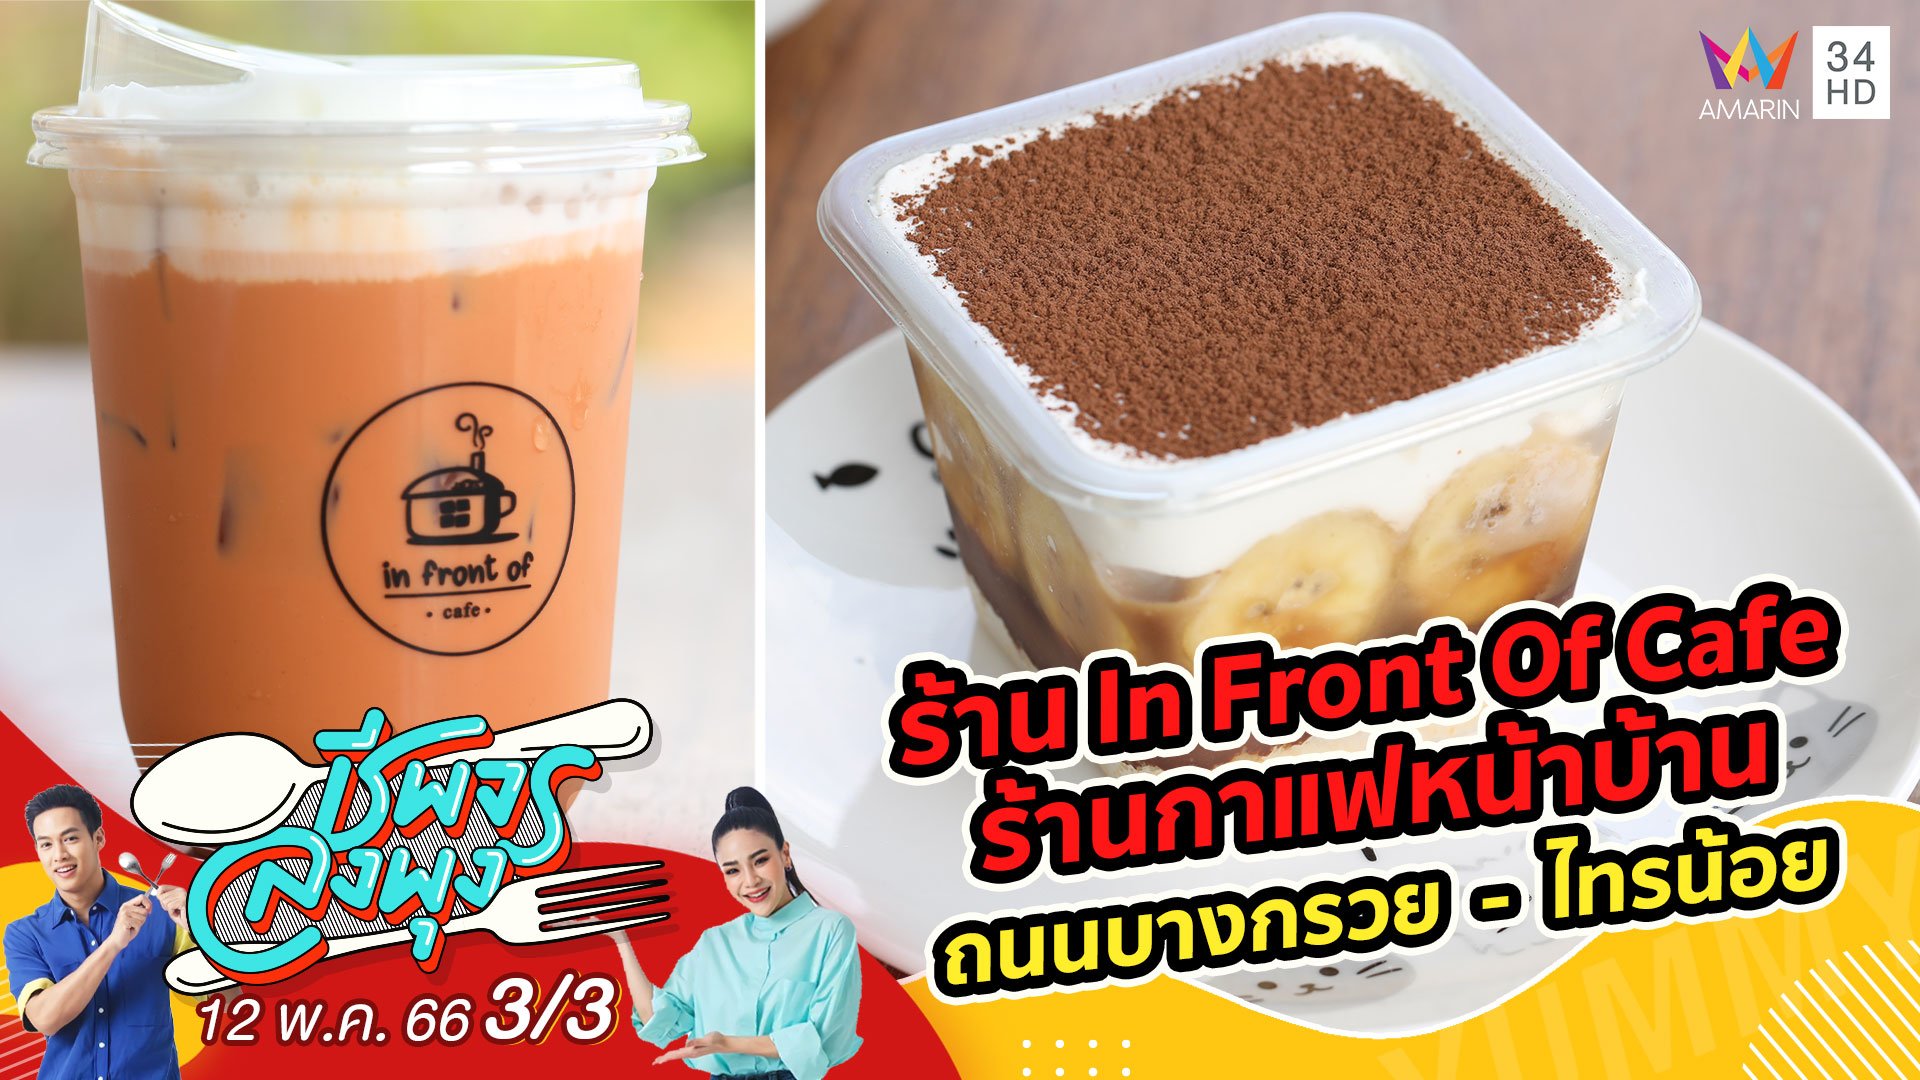 ถูกใจคอกาแฟ @ ร้าน In Front Of Cafe ร้านกาแฟหน้าบ้าน | ชีพจรลงพุง | 13 พ.ค. 66 (3/3) | AMARIN TVHD34